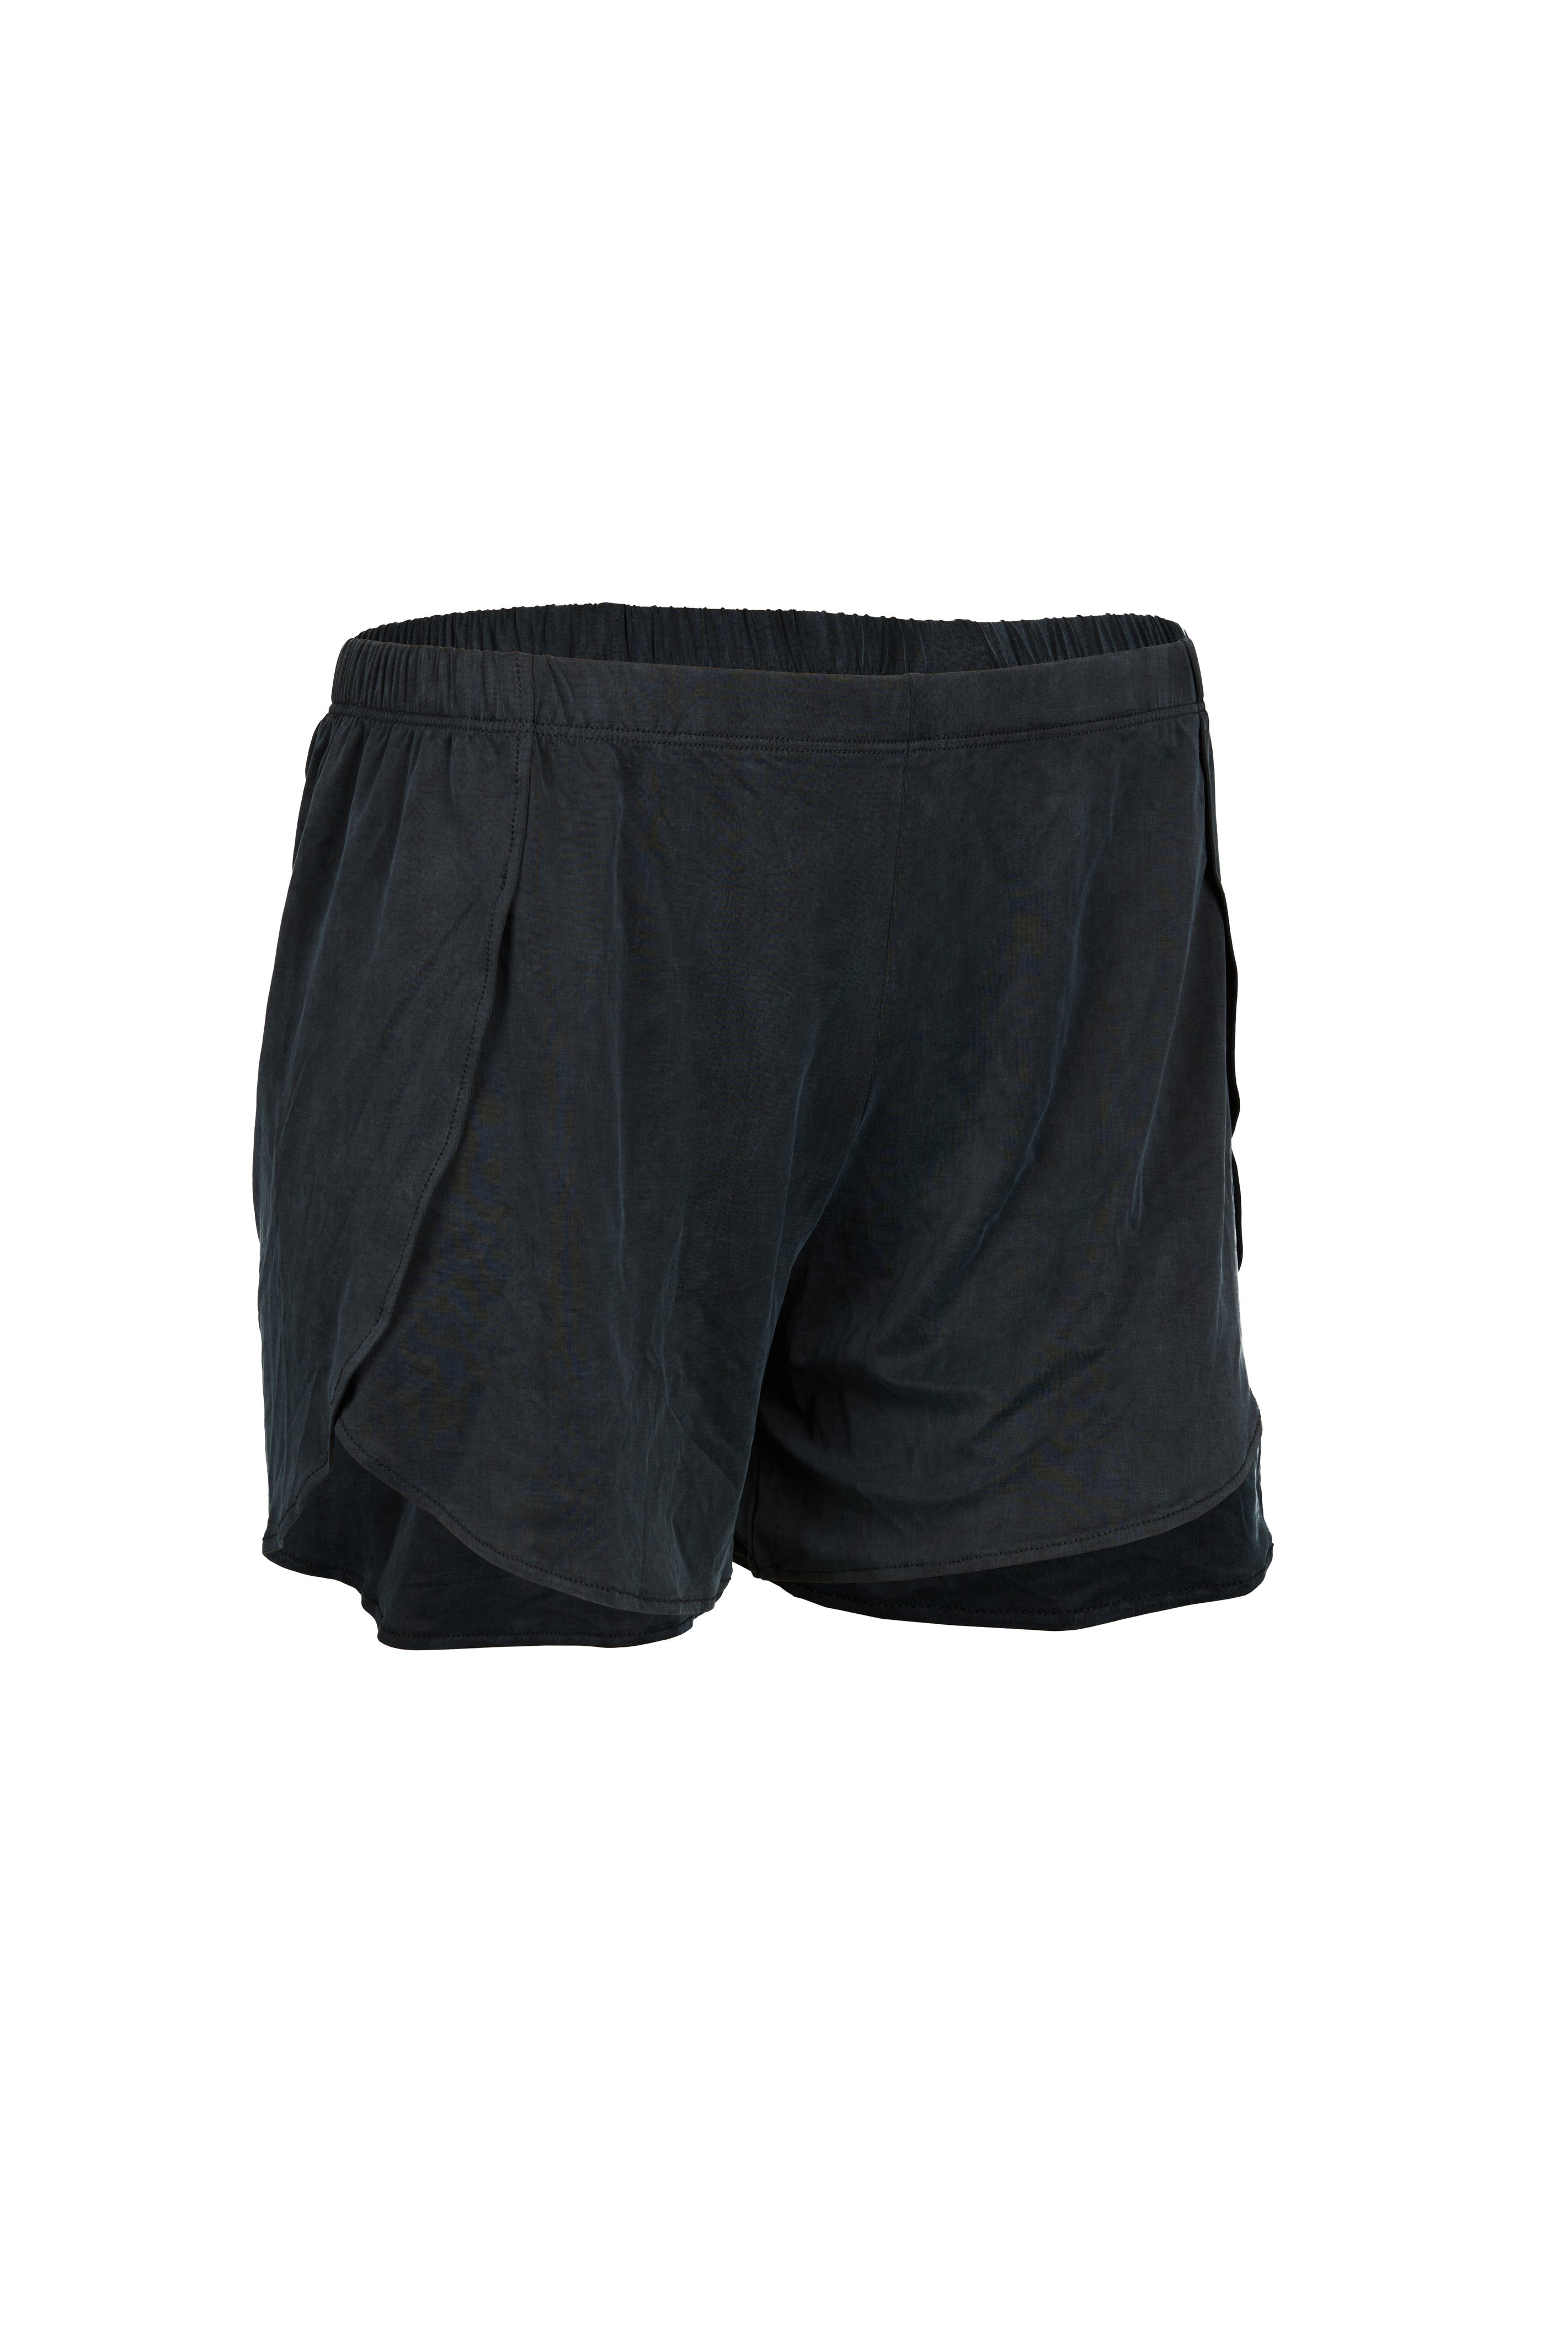 Schwarze Lounge Shorts aus Cupro von MOYA KALA